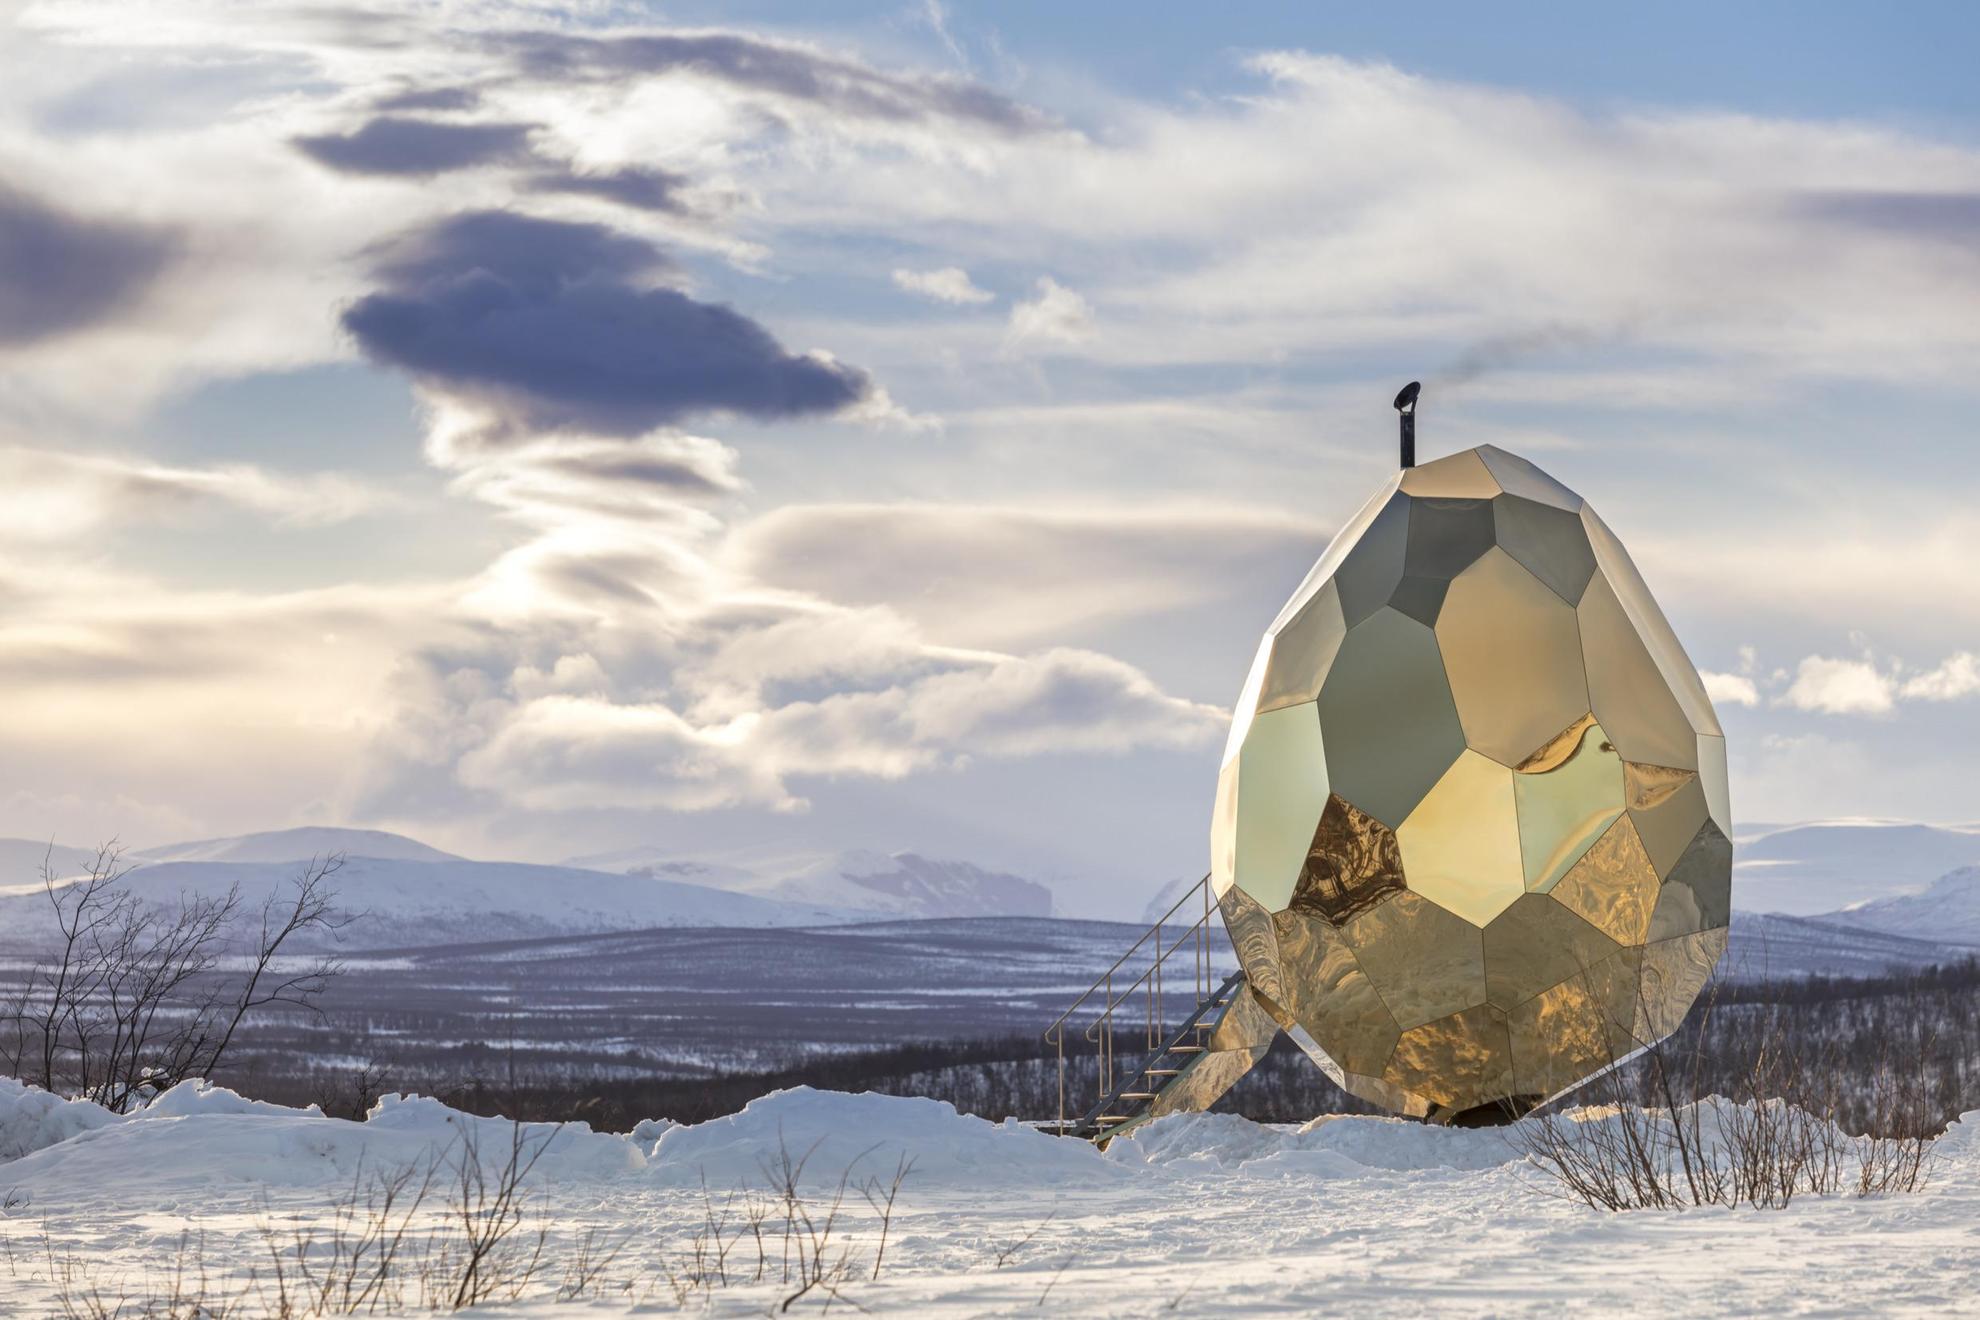 Eine holzbeheizte Sauna in Form eines Eies mit reflektierenden Laken, eingebettet in die arktische Winterlandschaft von Kiruna, die von Bergen und Schnee geprägt ist.